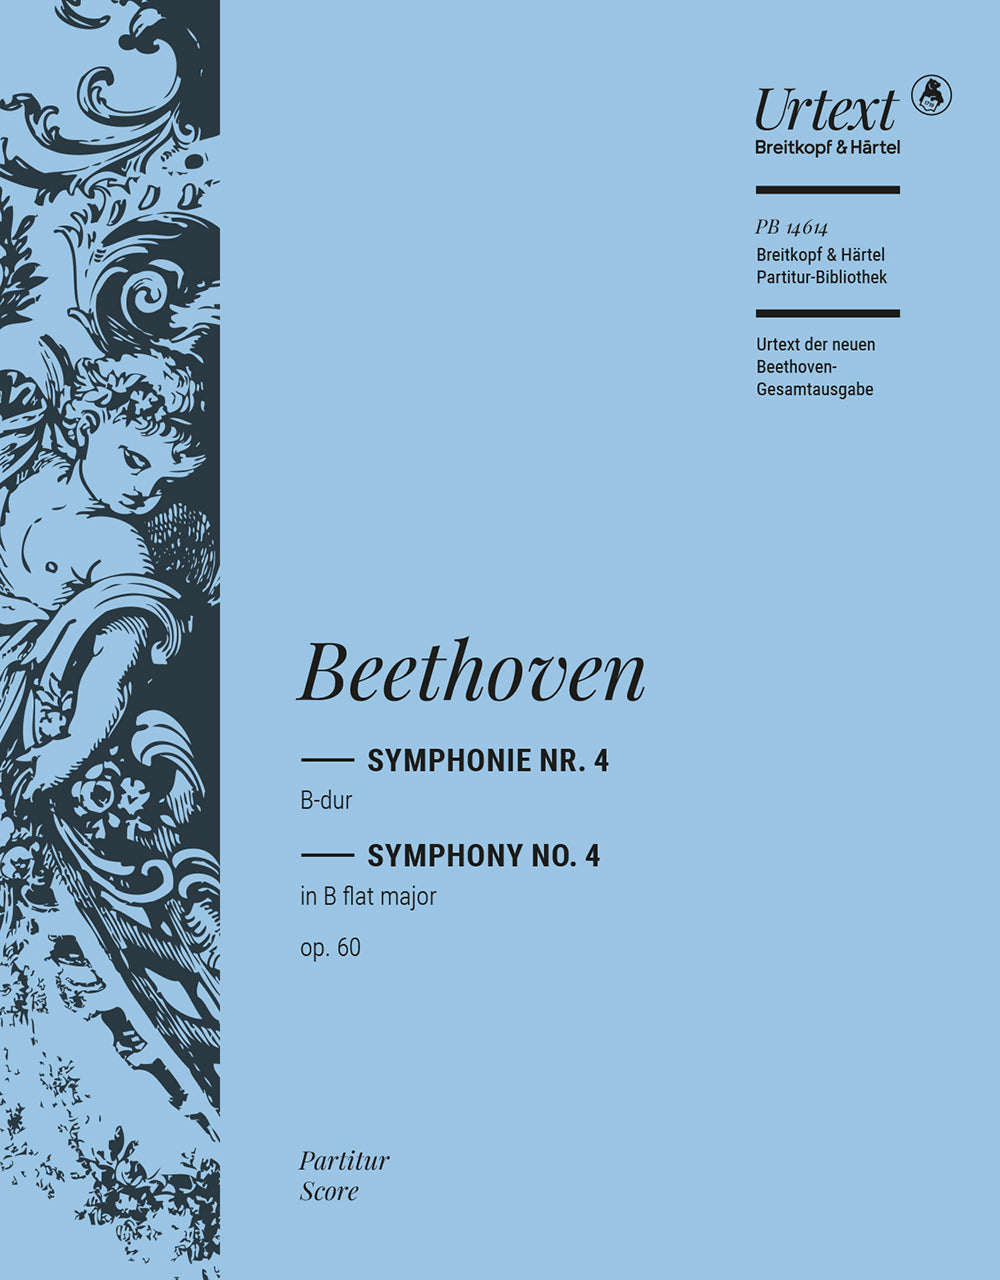 Beethoven Symphony No 4 FS